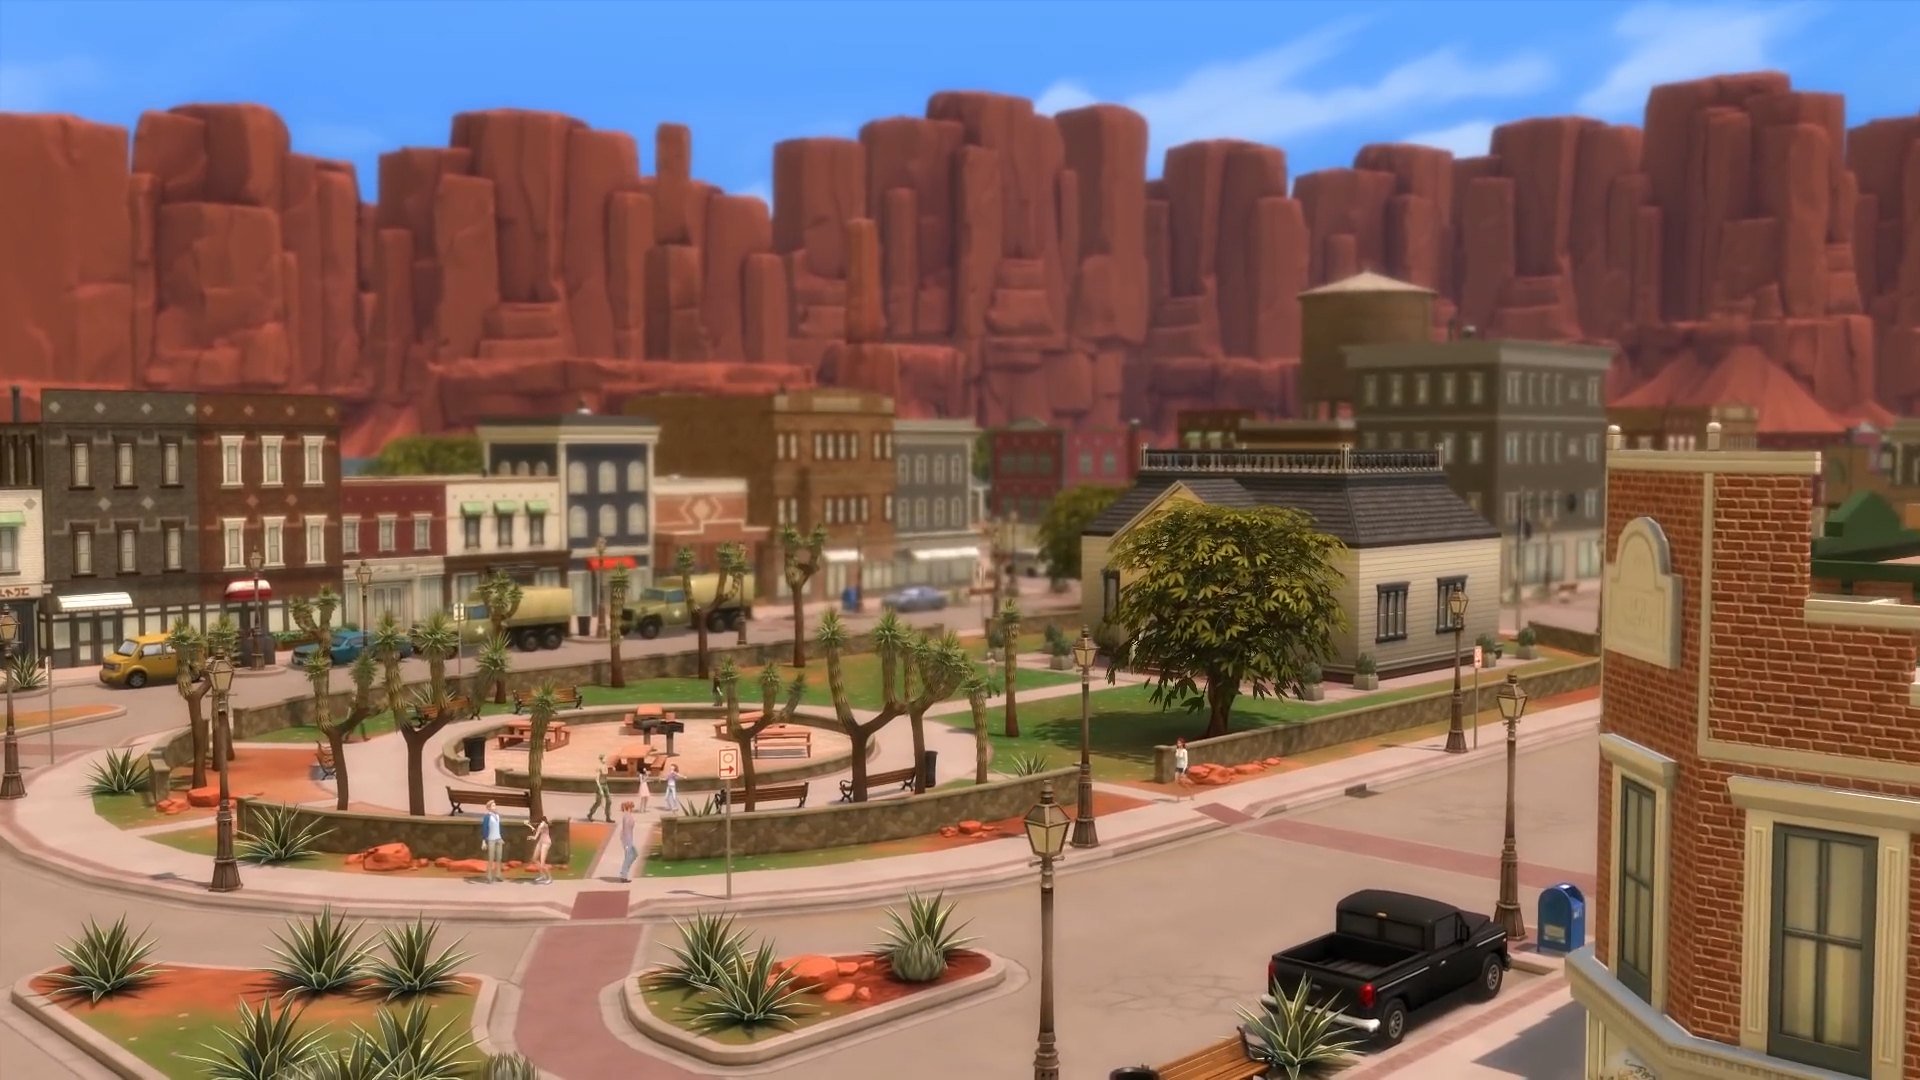 The Sims 4: StrangerVille - screenshot 2